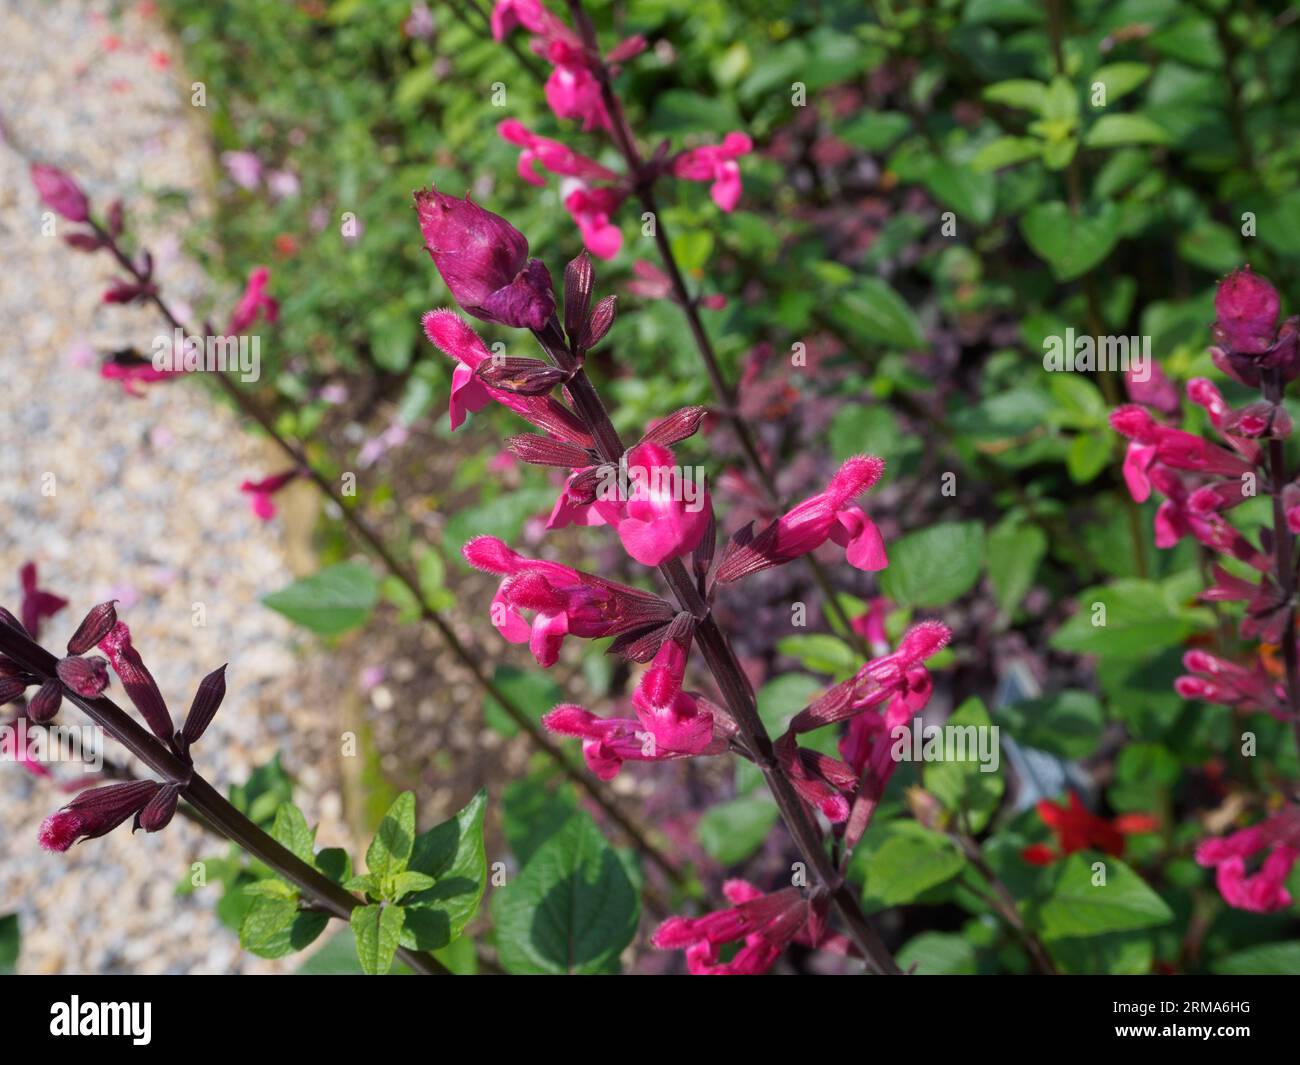 Salvia ' Mulberry Jam' Stock Photo